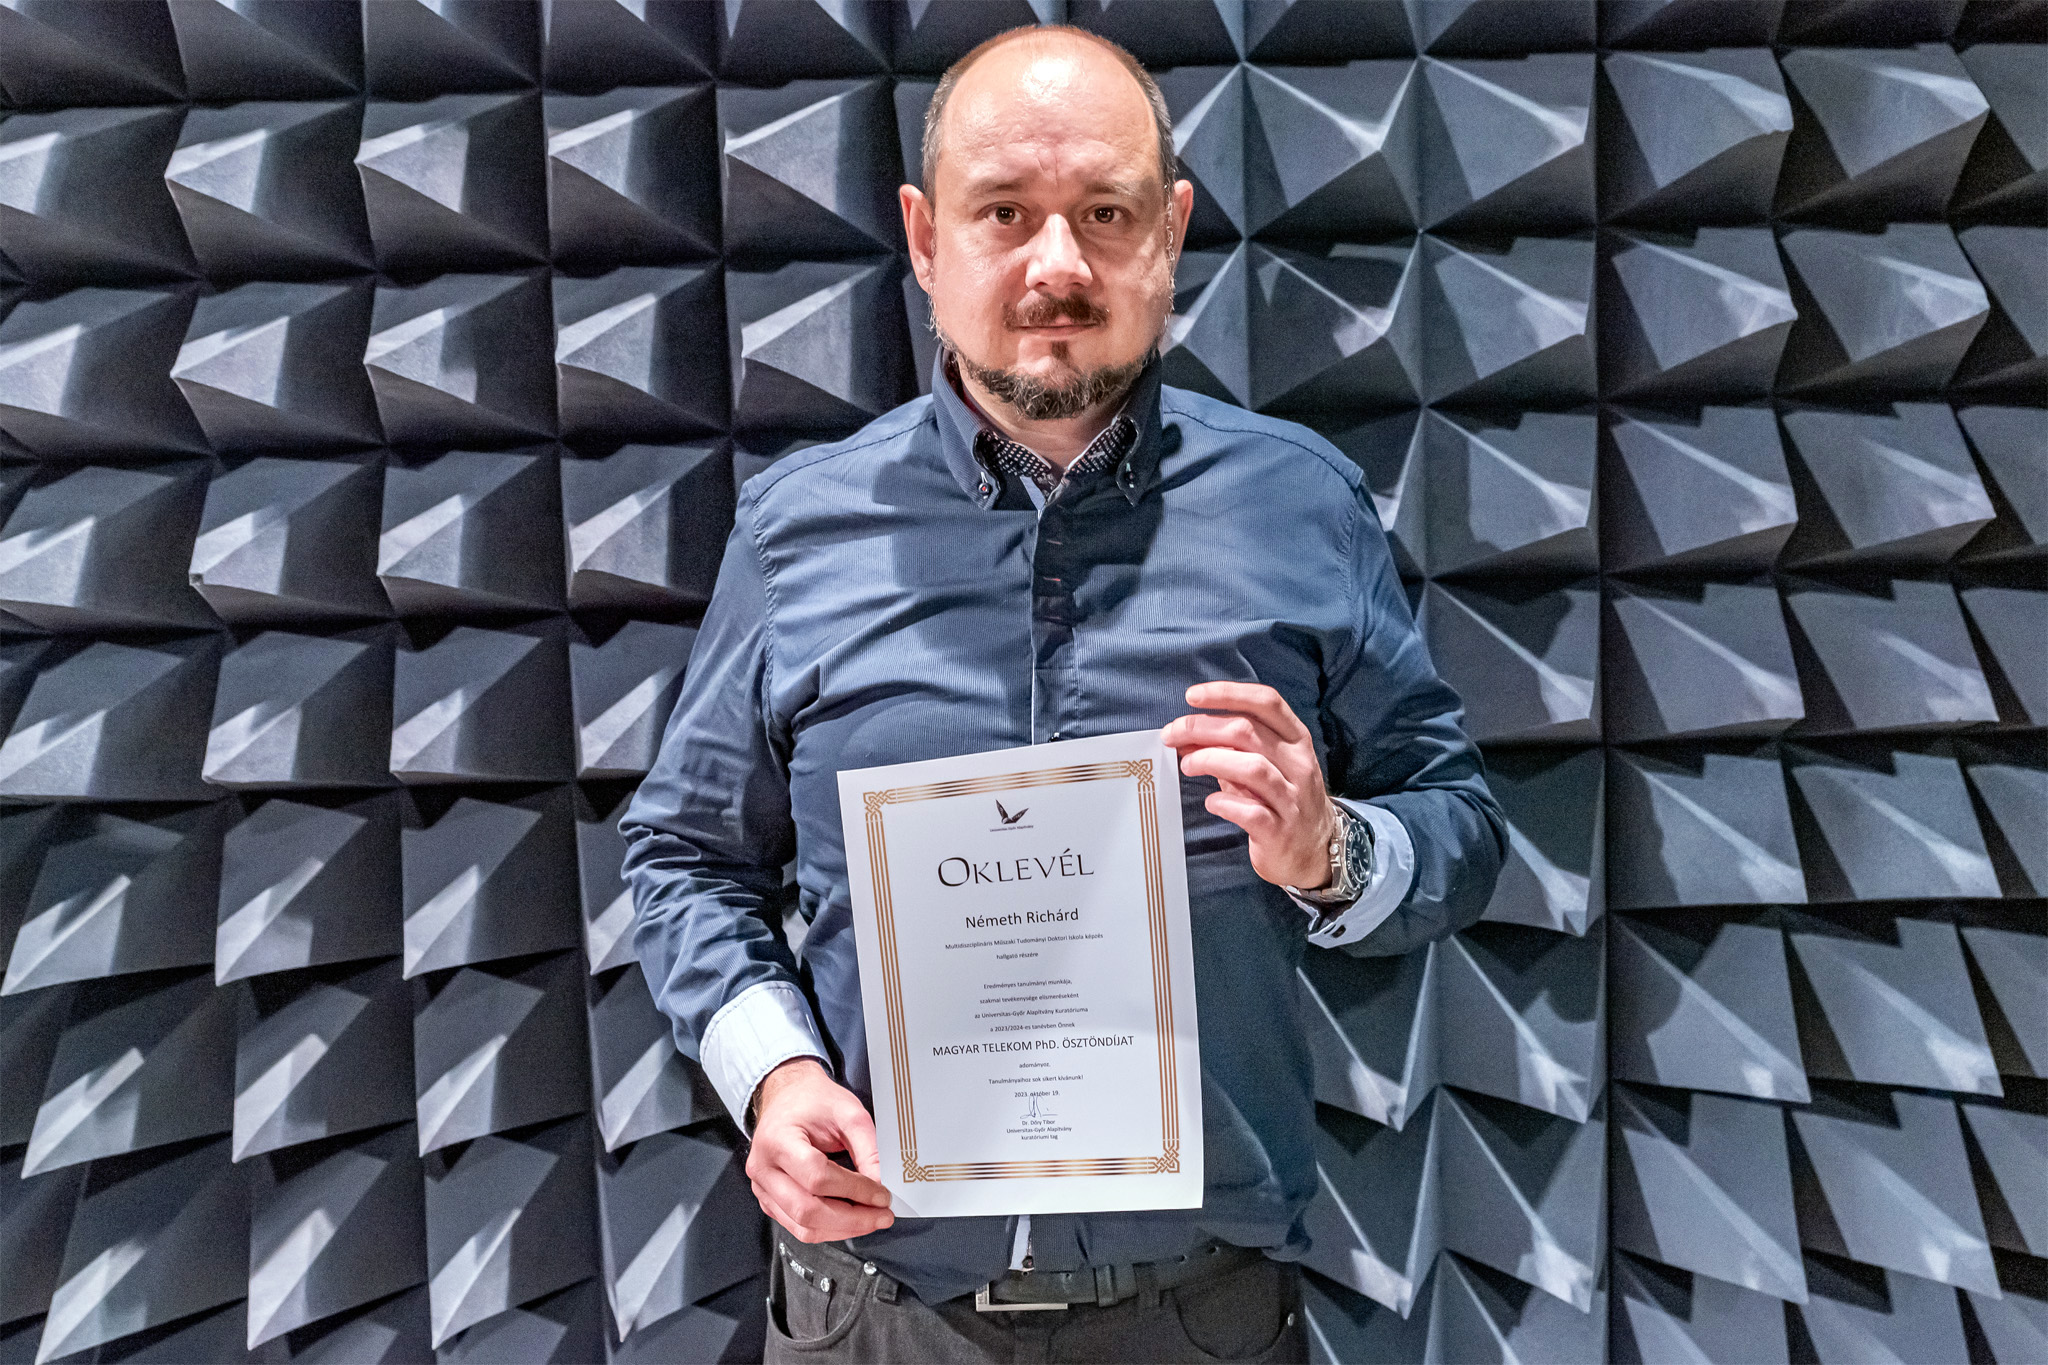 "Magyar Telekom PhD" ösztöndíj